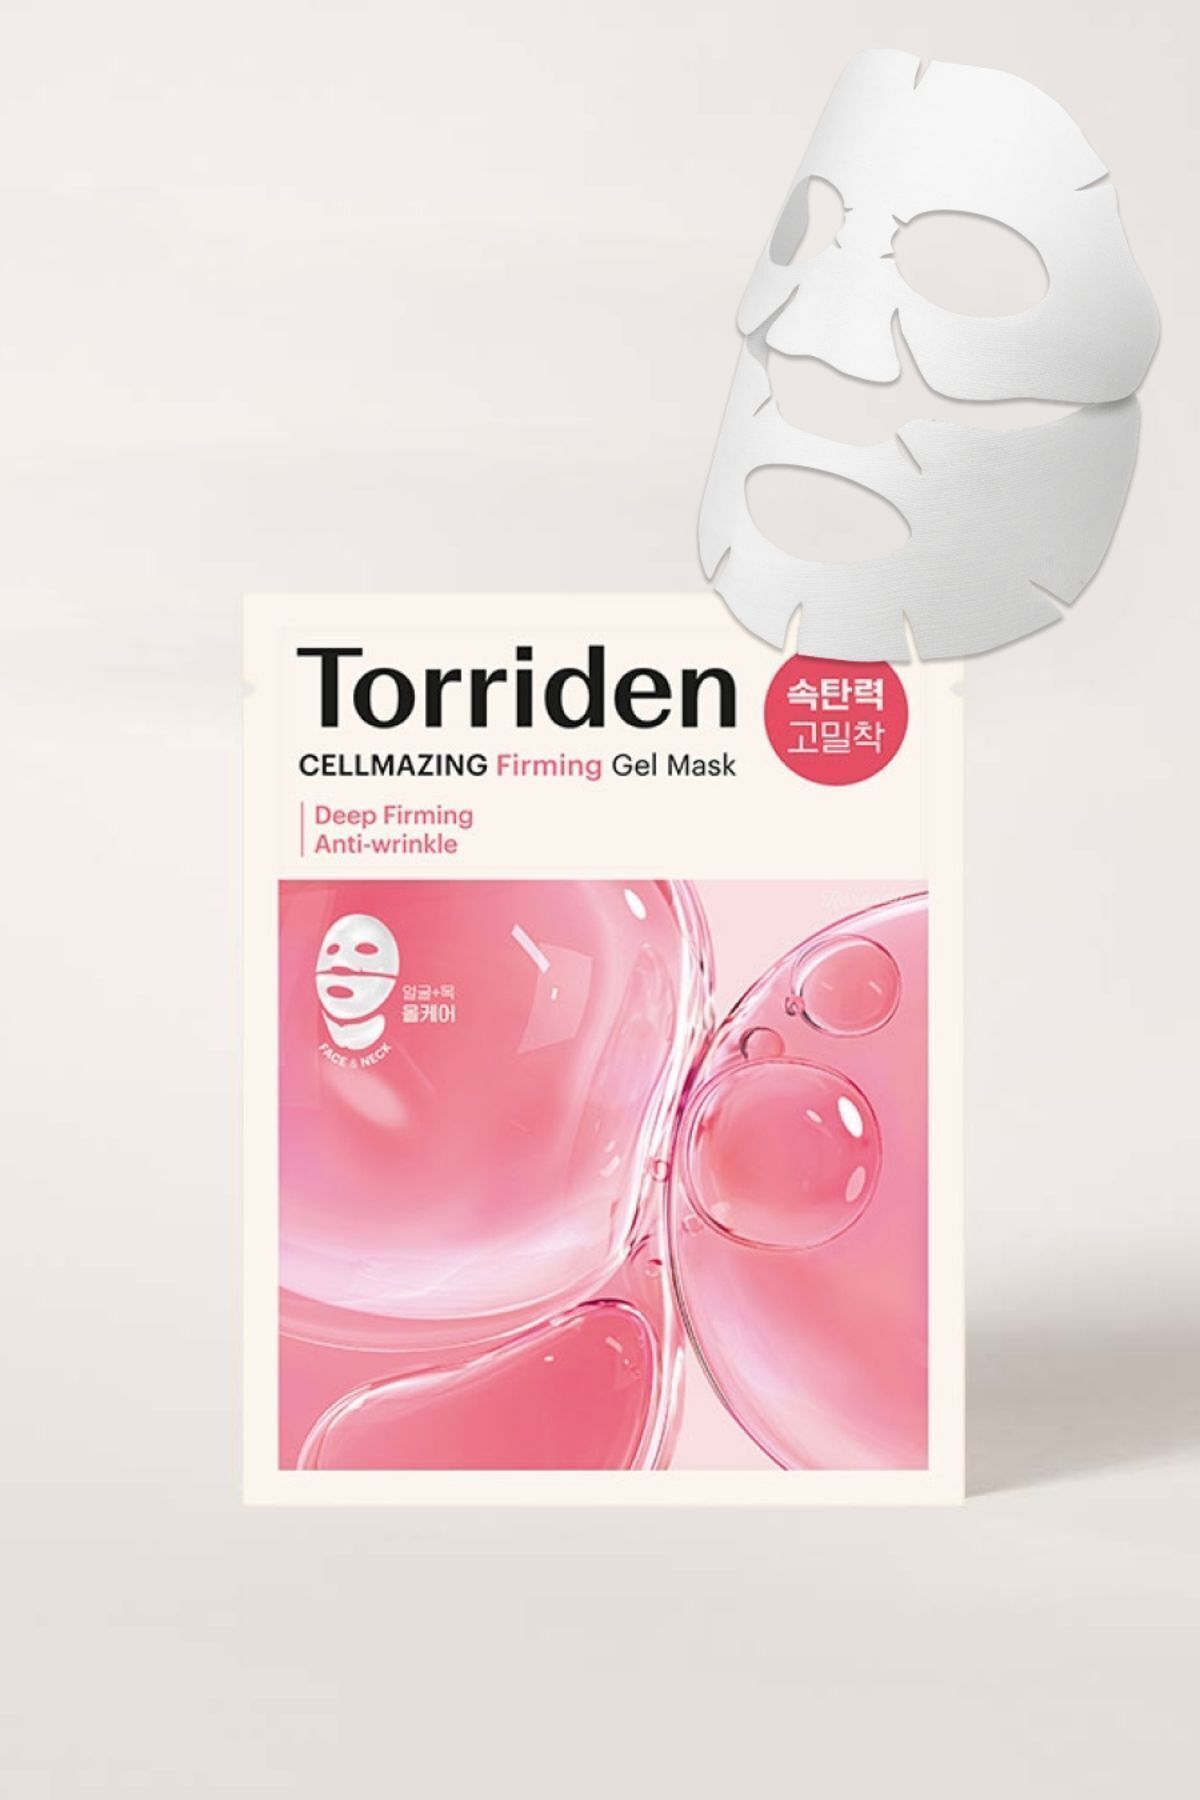 Torriden Cellmazıng Firming Gel Mask 1 Ad (KORENDY) Kırışıklık Önleyici 3 Parça Jel Kolajen Maske 45gr